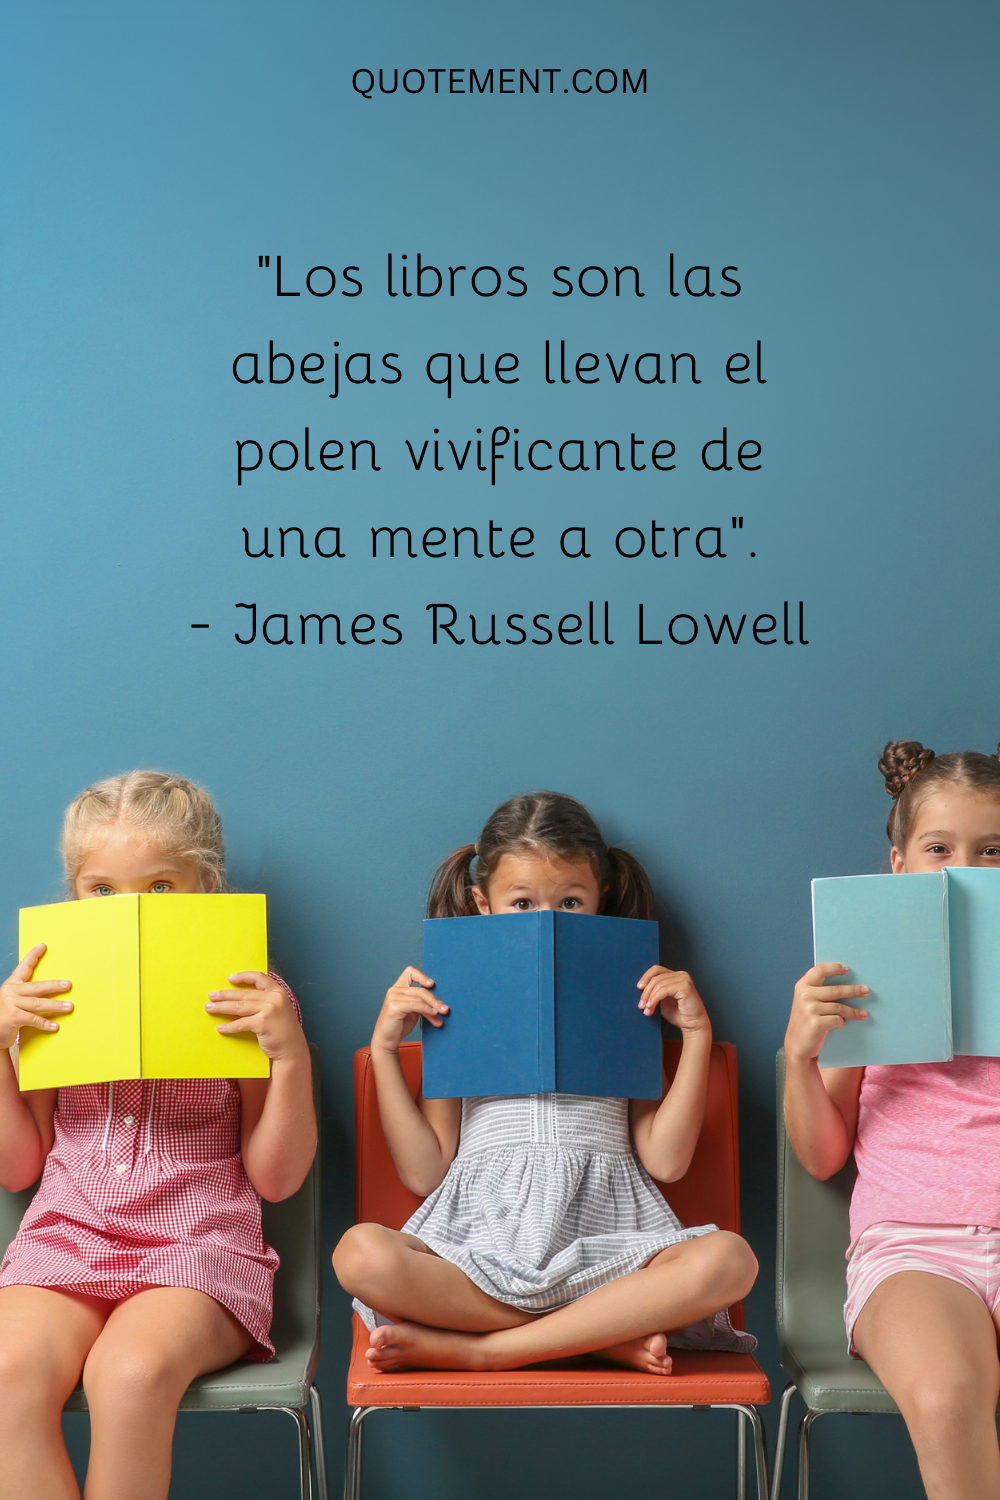 "Los libros son las abejas que llevan el polen vivificante de una mente a otra". - James Russell Lowell